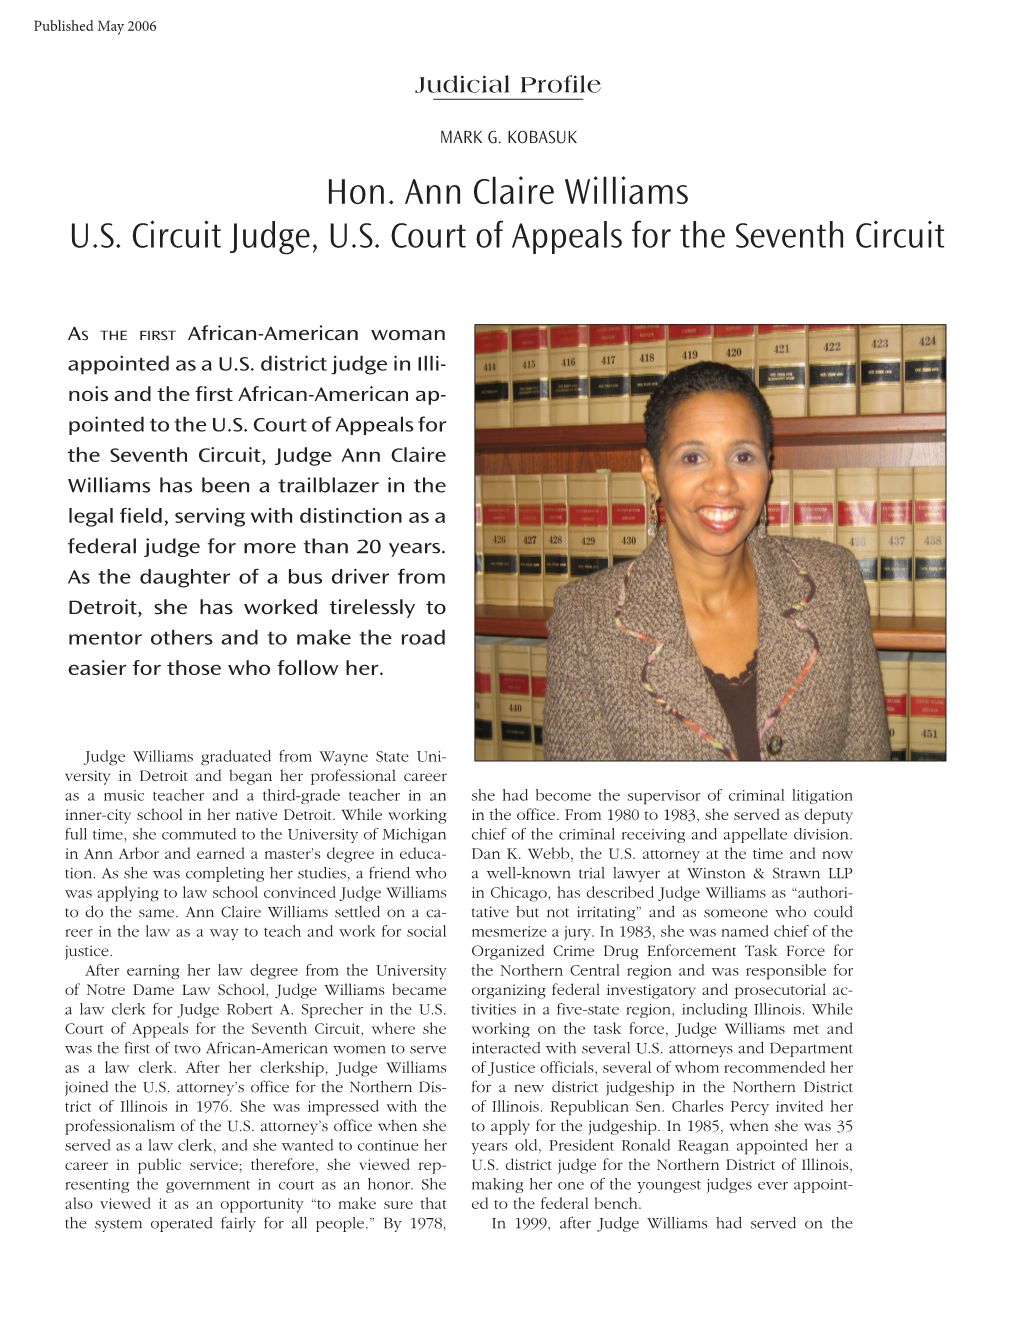 Hon. Ann Claire Williams U.S